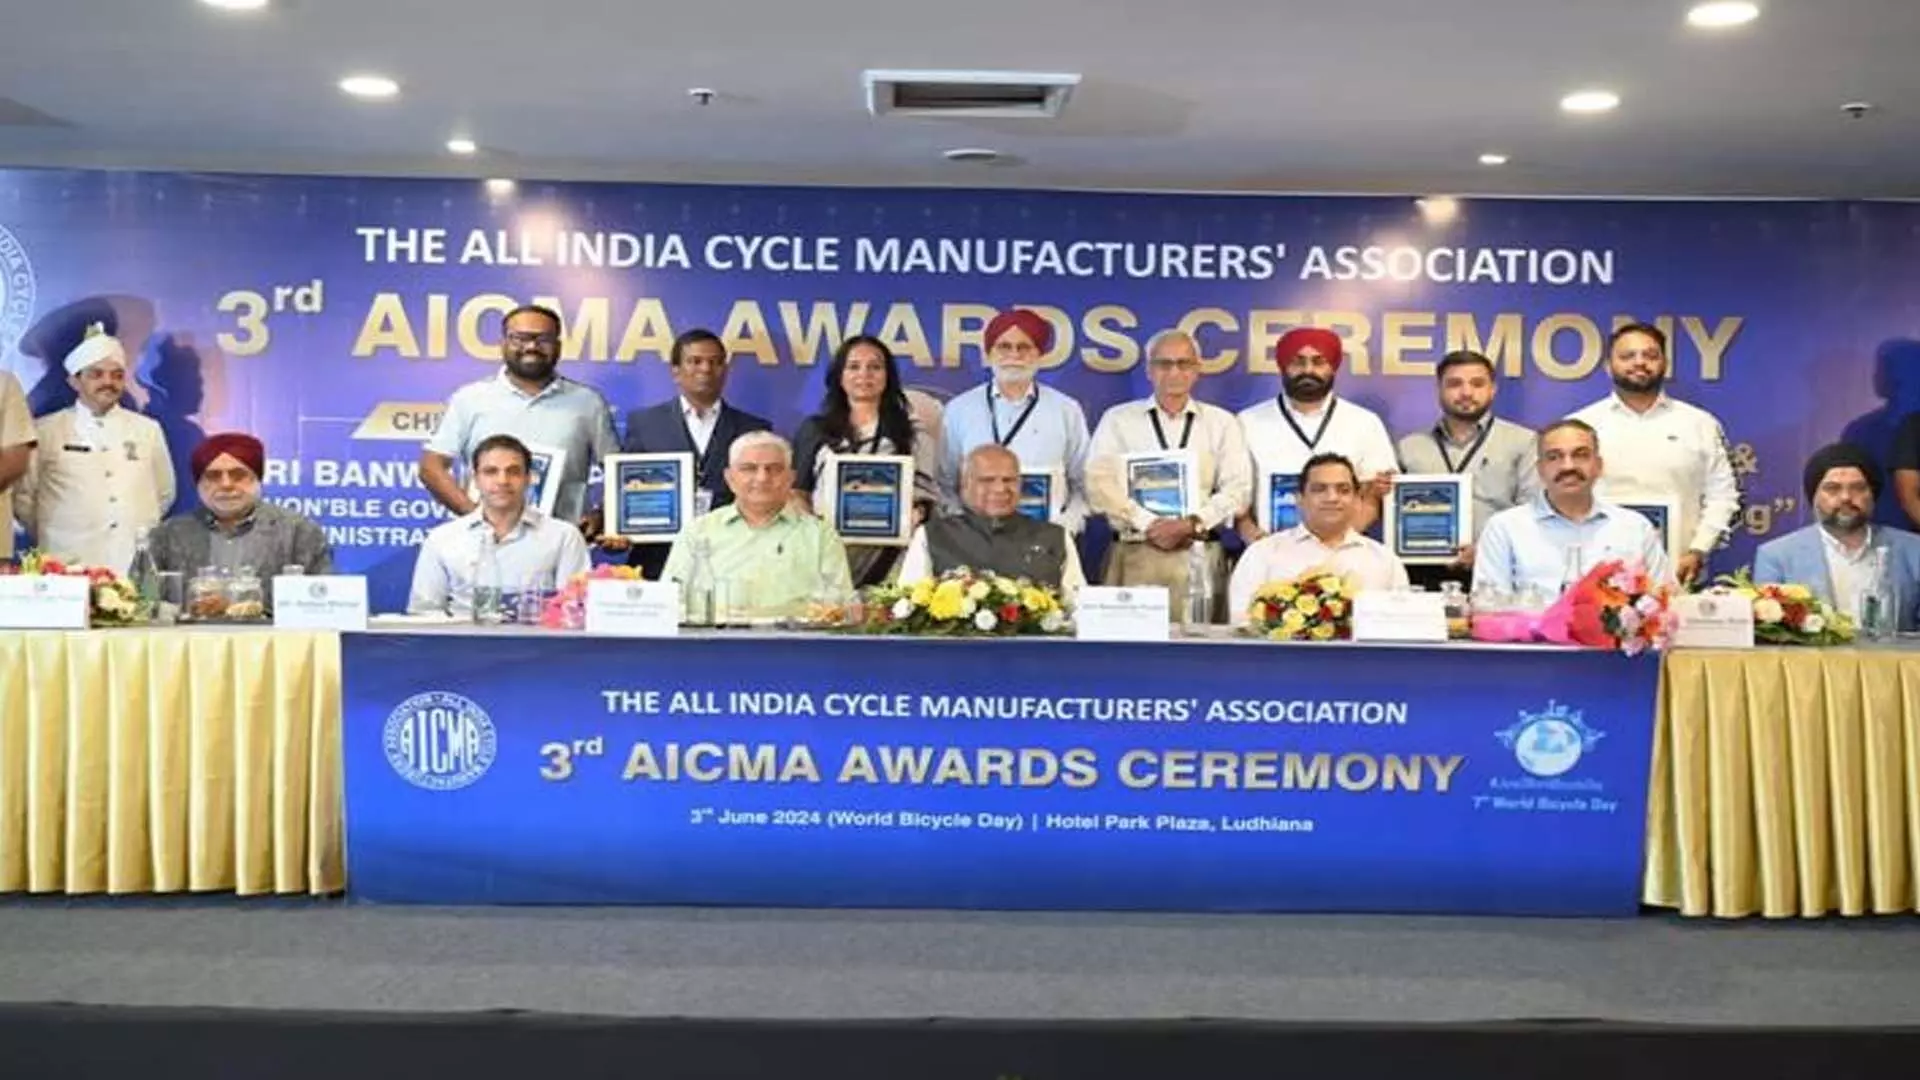 PANJAB: अखिल भारतीय साइकिल निर्माता संघ ने लुधियाना में पुरस्कार समारोह आयोजित किया